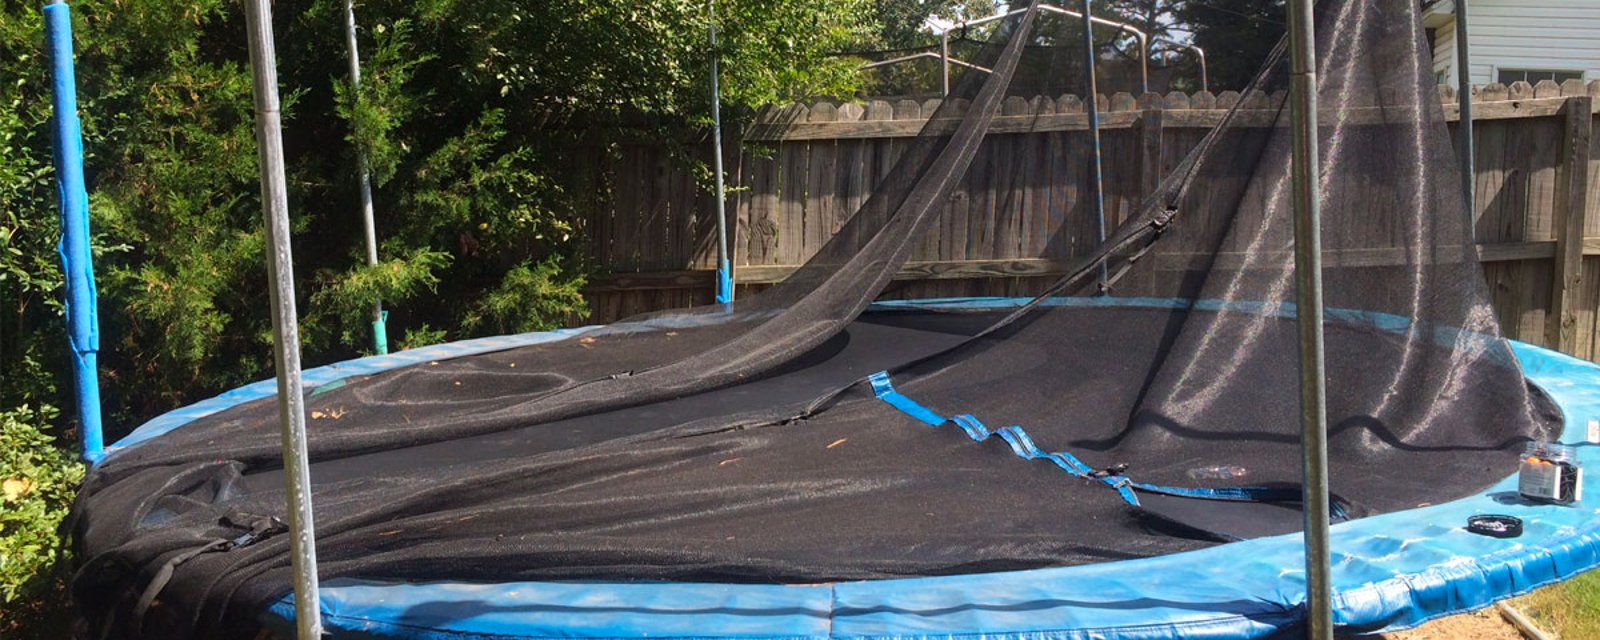 Les enfants ont brisé le trampoline mais cette maman décide de la récupérer et de la transformer